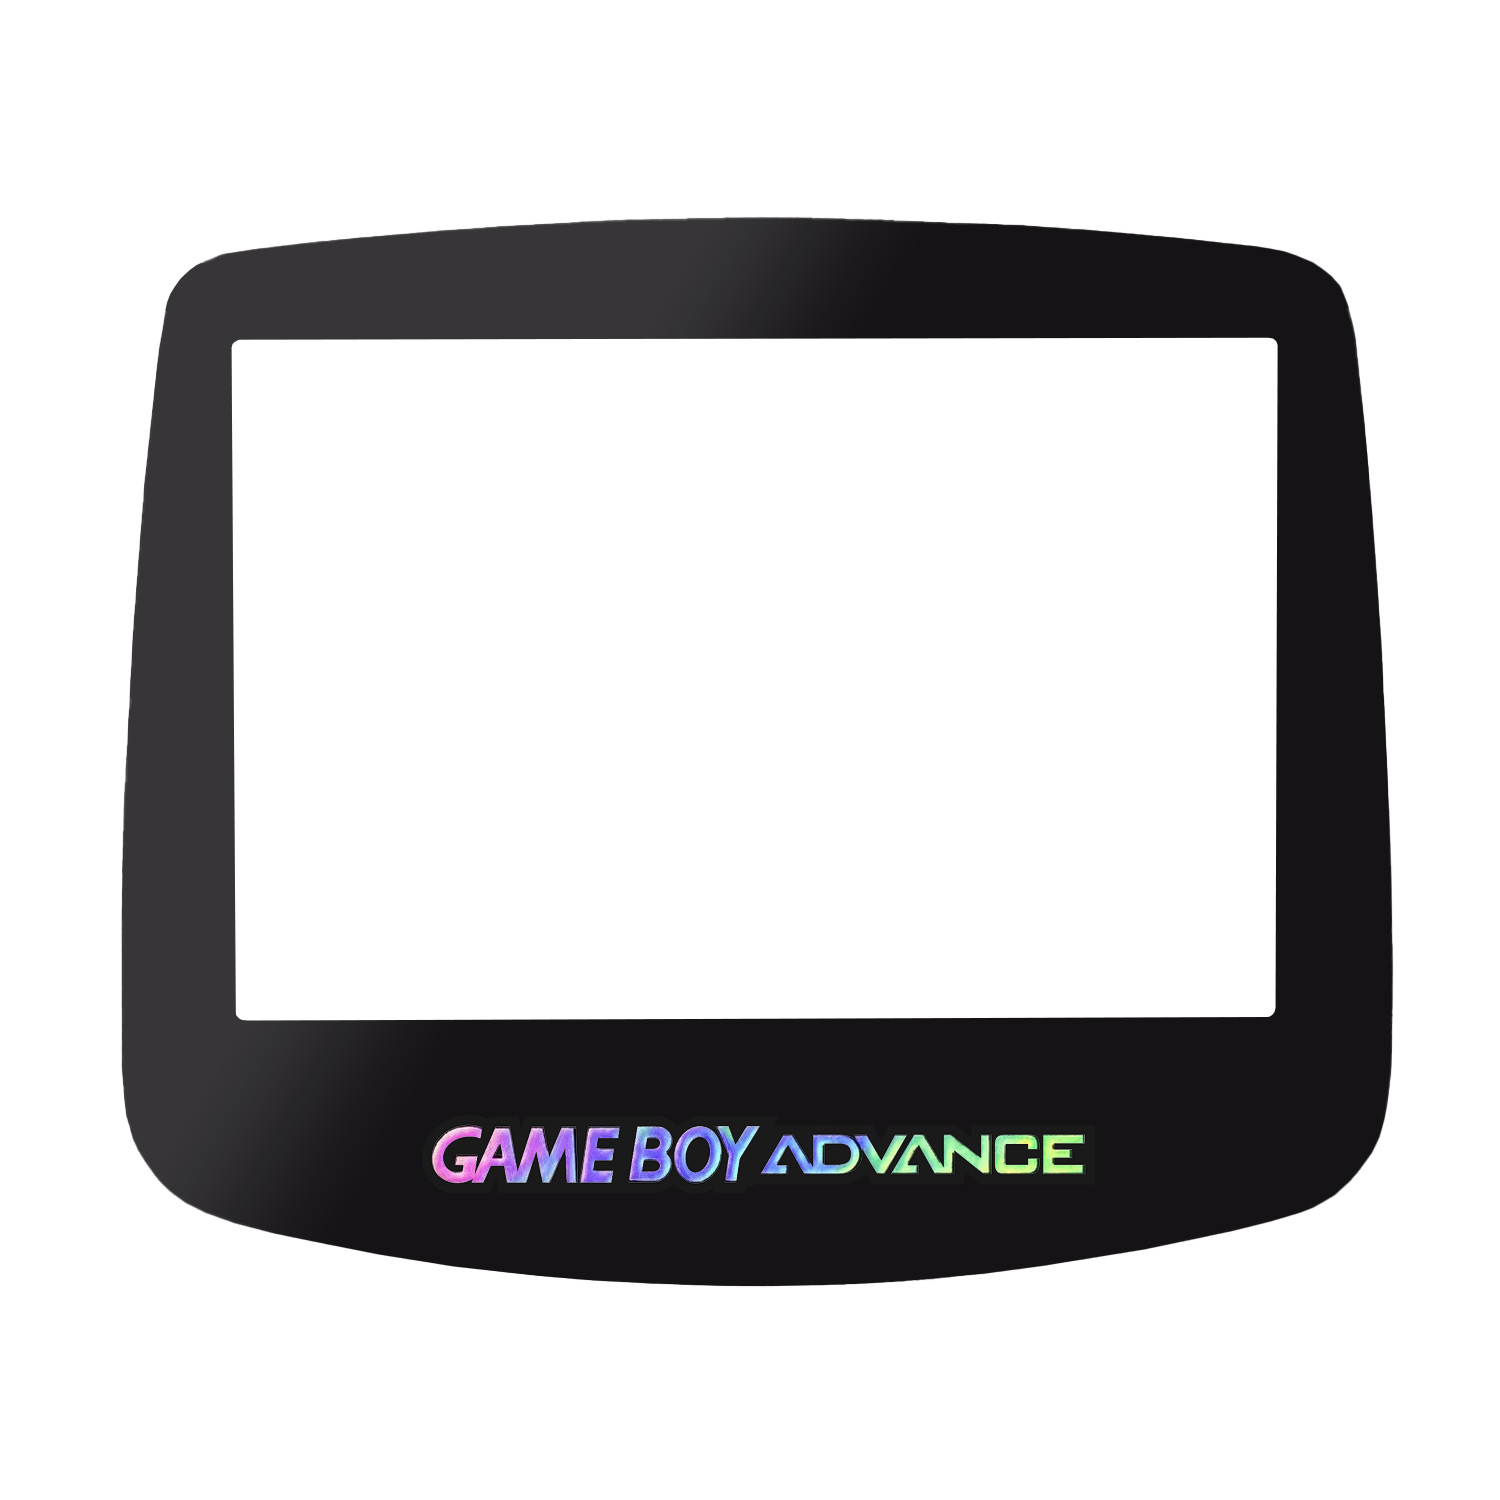 Schermo di vetro per Game Boy Advance (Holo nero)